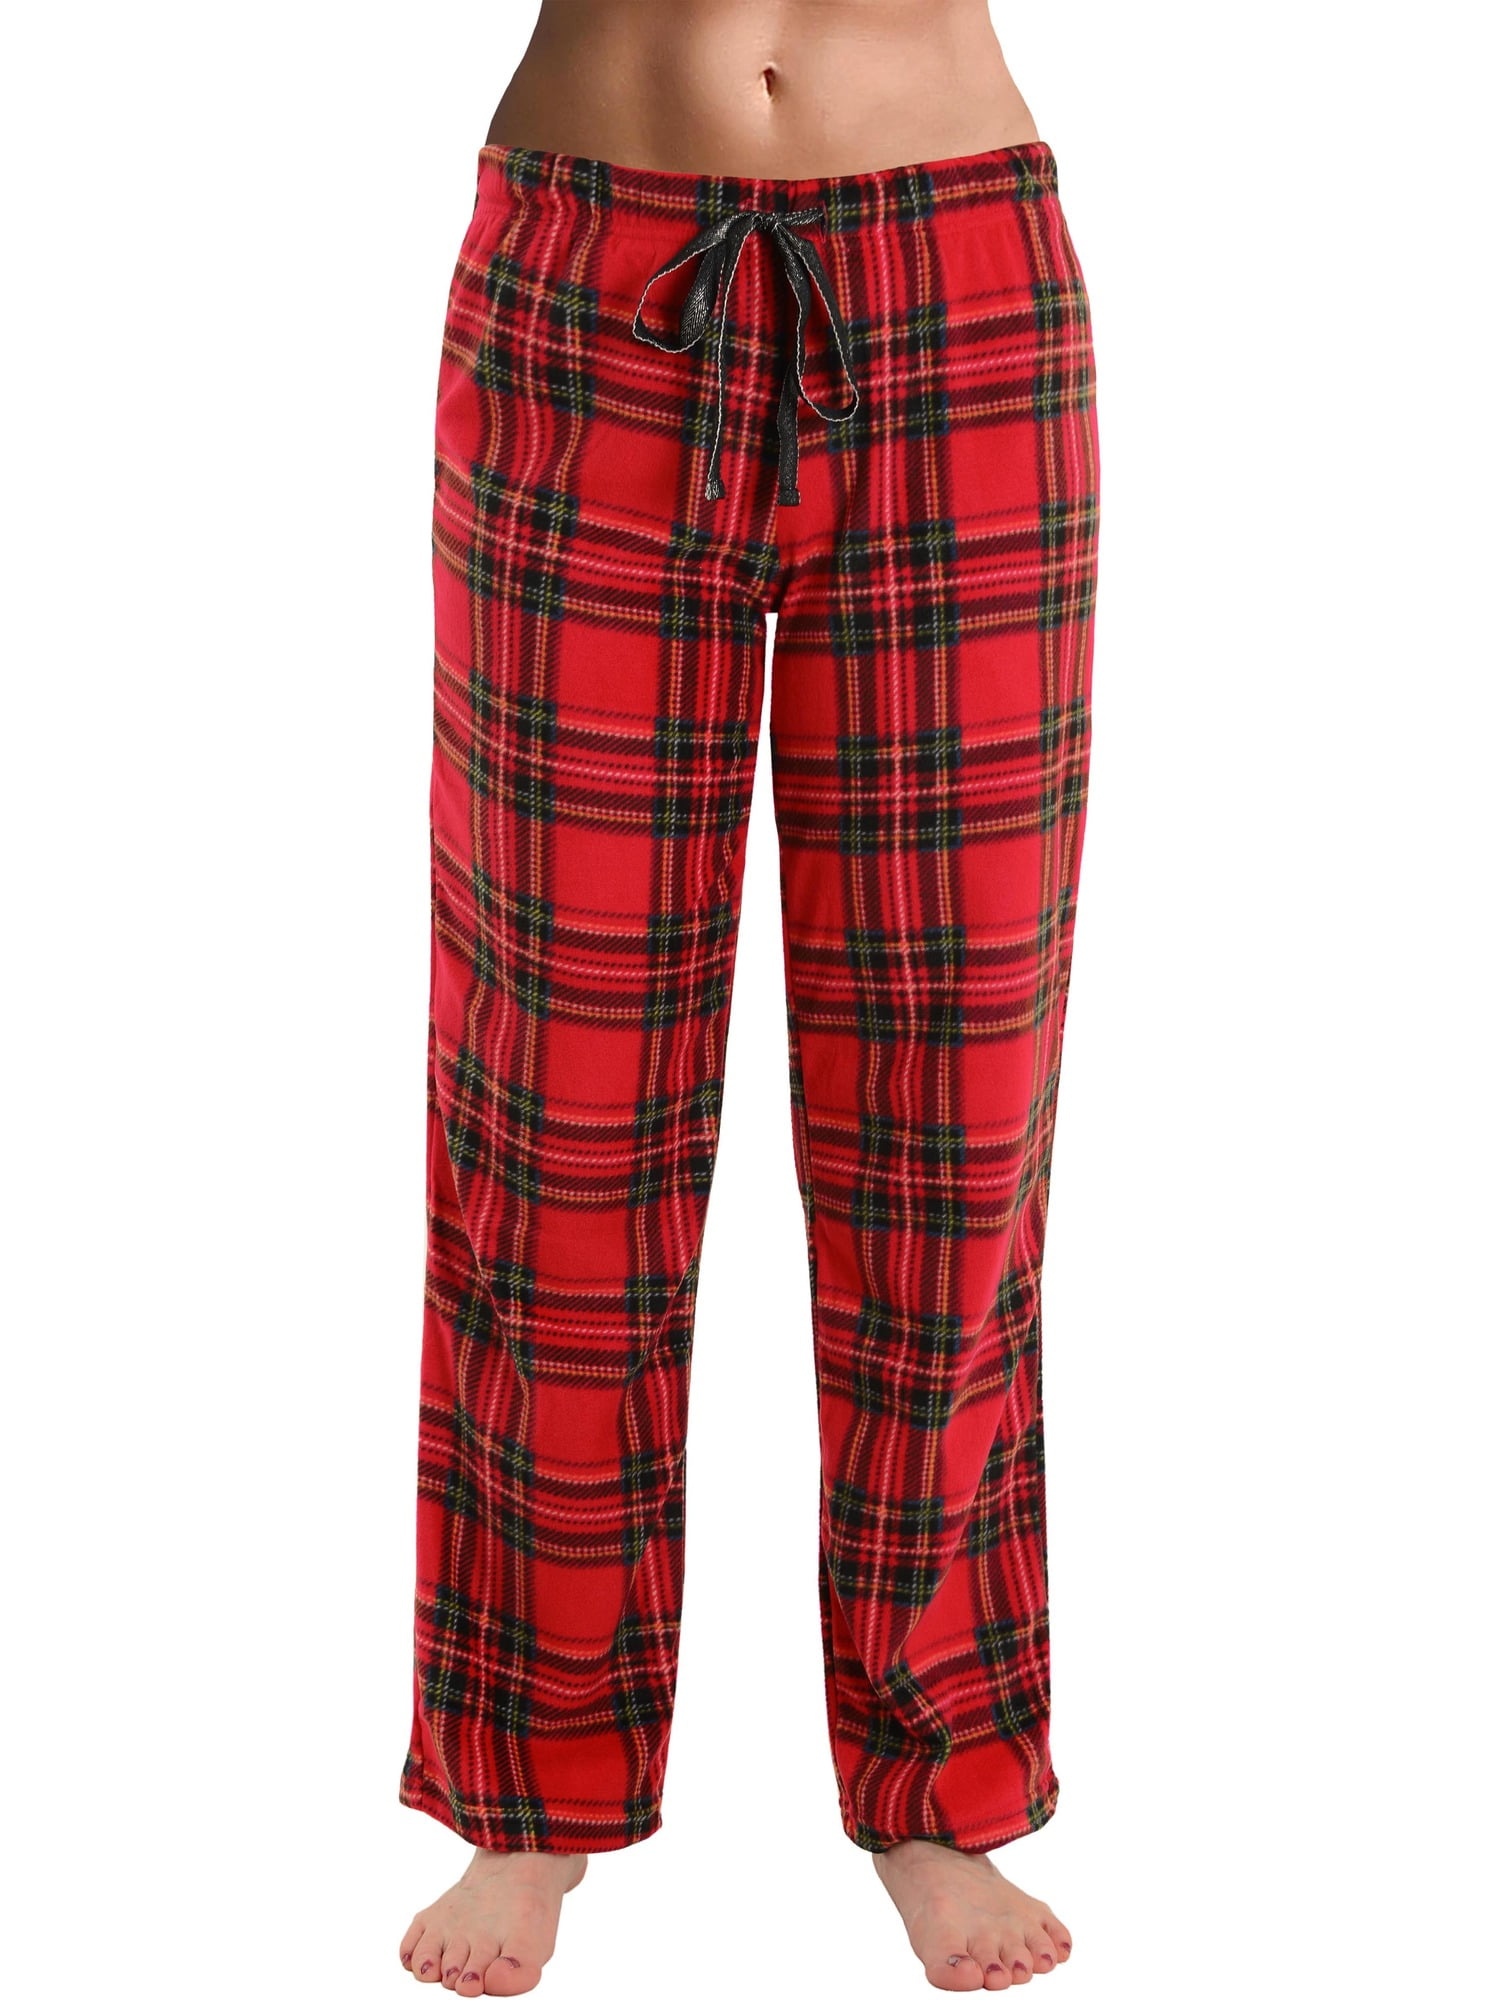 Int Intimate - Womens Red Plaid Pajama Pants Drawstring Tie Microfleece